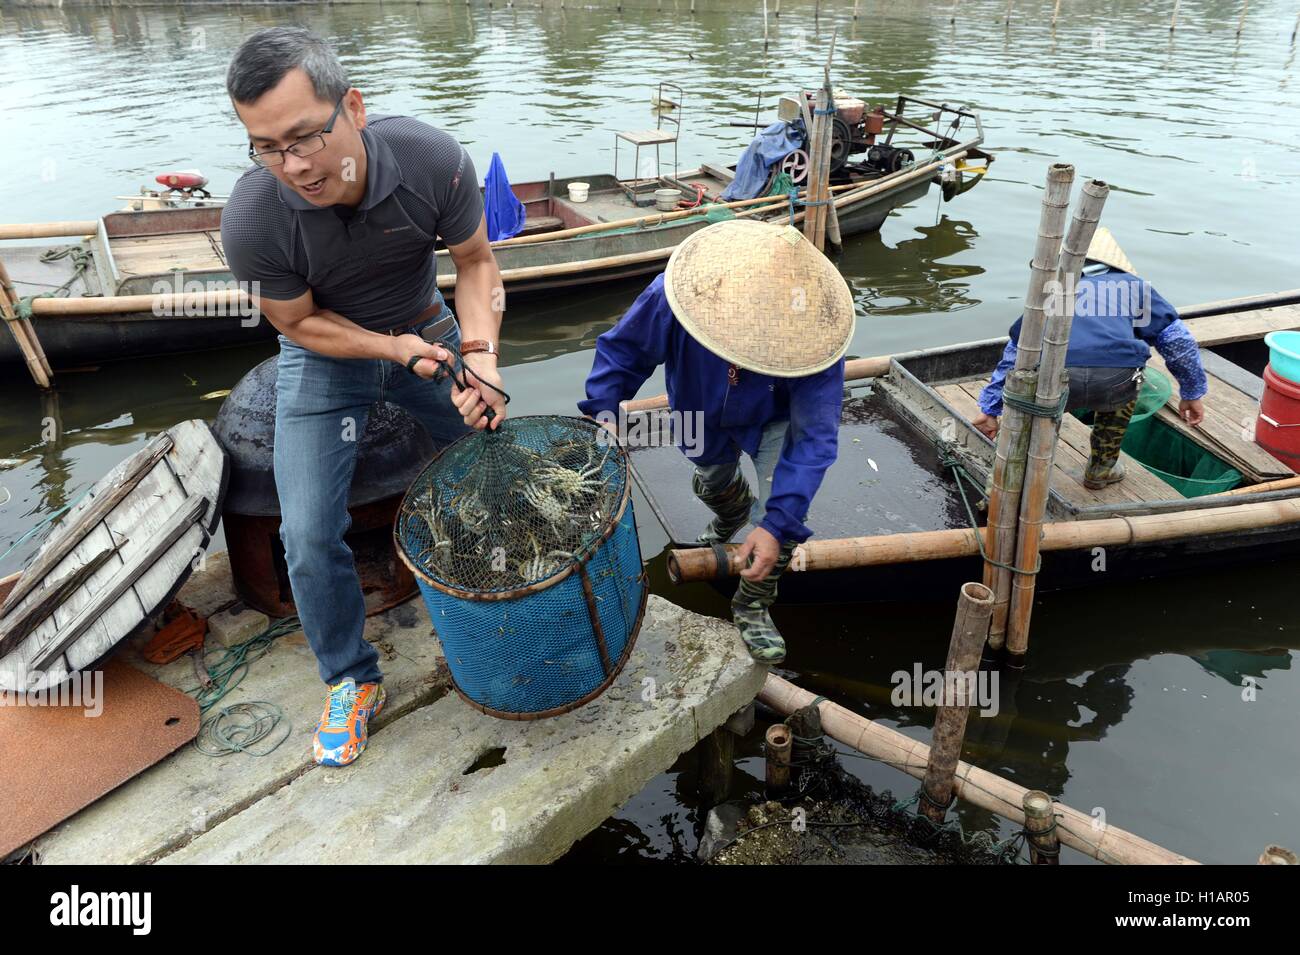 Suzhou. Sep 24, 2016. La récolte des pêcheurs de crabes chinois sur le lac Yangcheng à Suzhou, Province de Jiangsu en Chine de l'Est, 23 septembre 2016. La saison de récolte 2016 pour le crabe chinois (Eriocheir sinensis) dans le lac Yangcheng, une importante région productrice a commencé le vendredi. Également connue sous le nom de crabe d'écluse, le crabe chinois sont favorisés par de nombreux amateurs de cuisine gastronomique. © Xinhua/Alamy Live News Banque D'Images